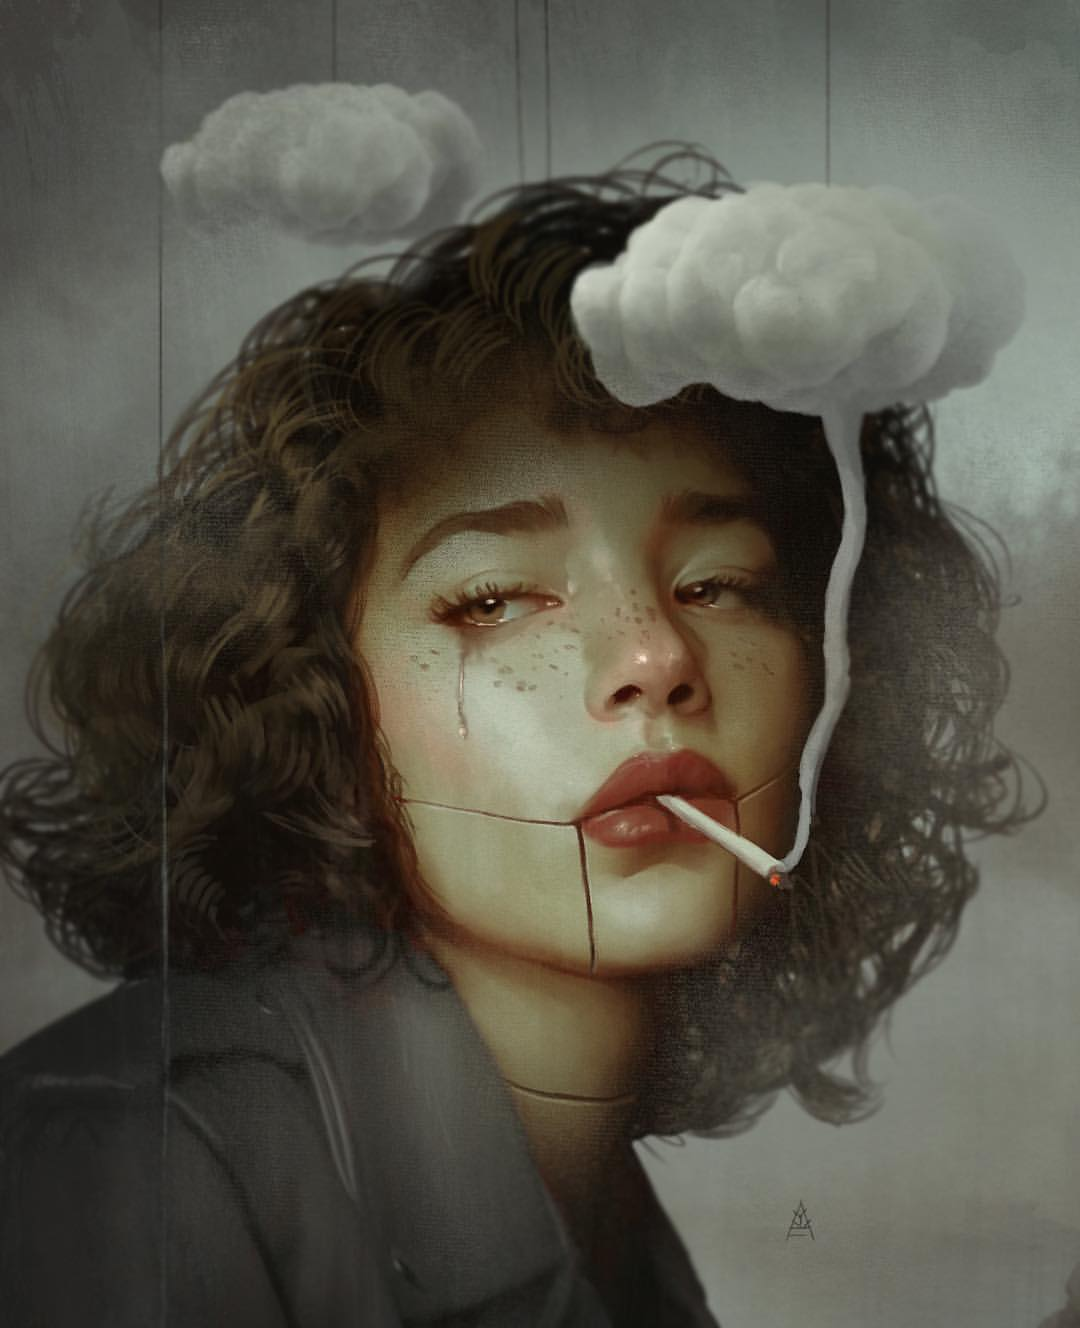 Girl Smoking Artwork Wallpapers